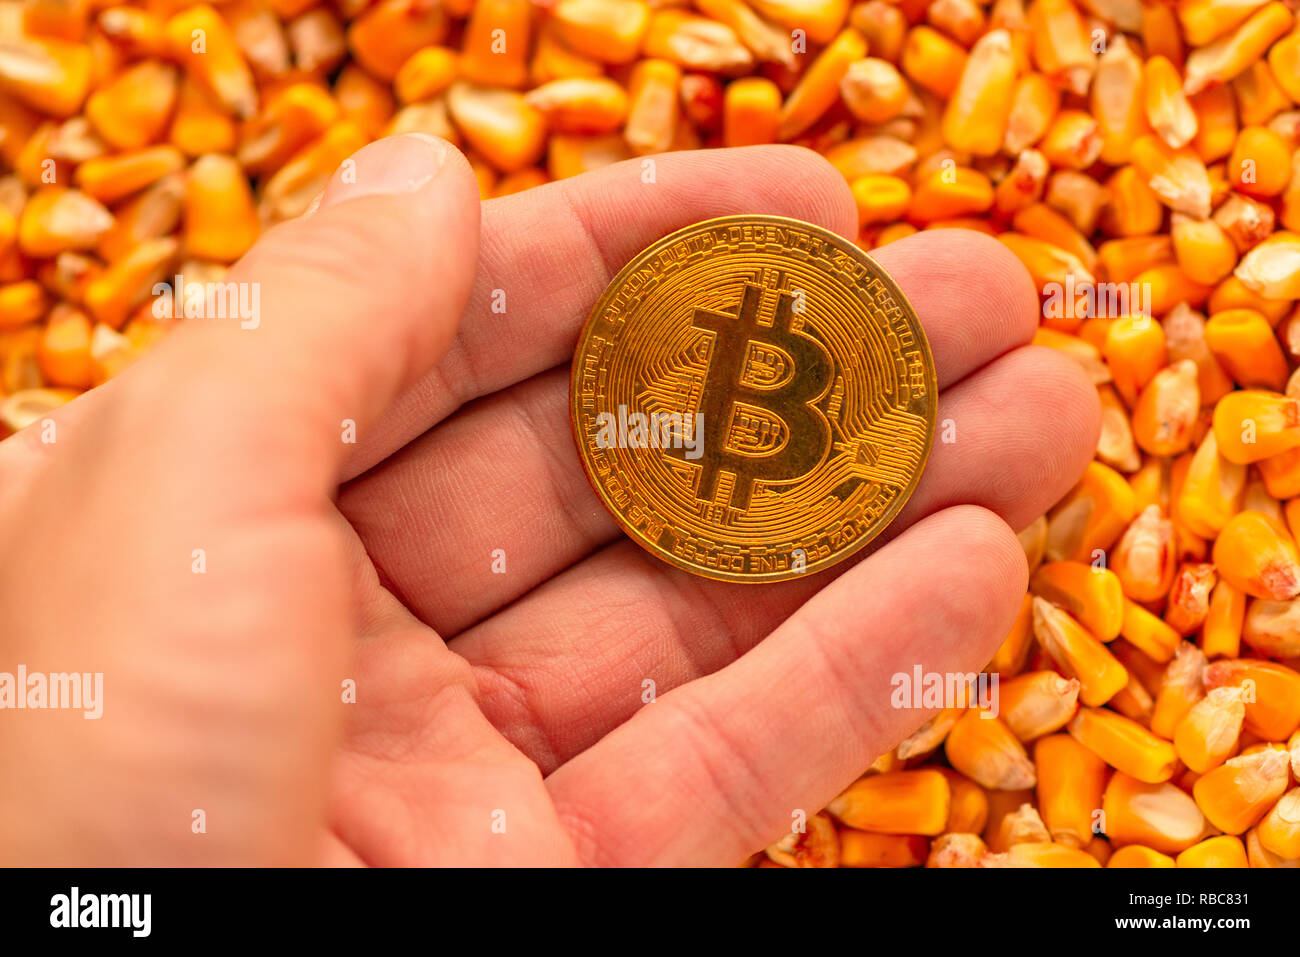 En Bitcoin main sur tas de grains de maïs, conceptual image cryptocurrency pour activité commerciale avec connexes dans le commerce des produits de l'entreprise agricole Banque D'Images